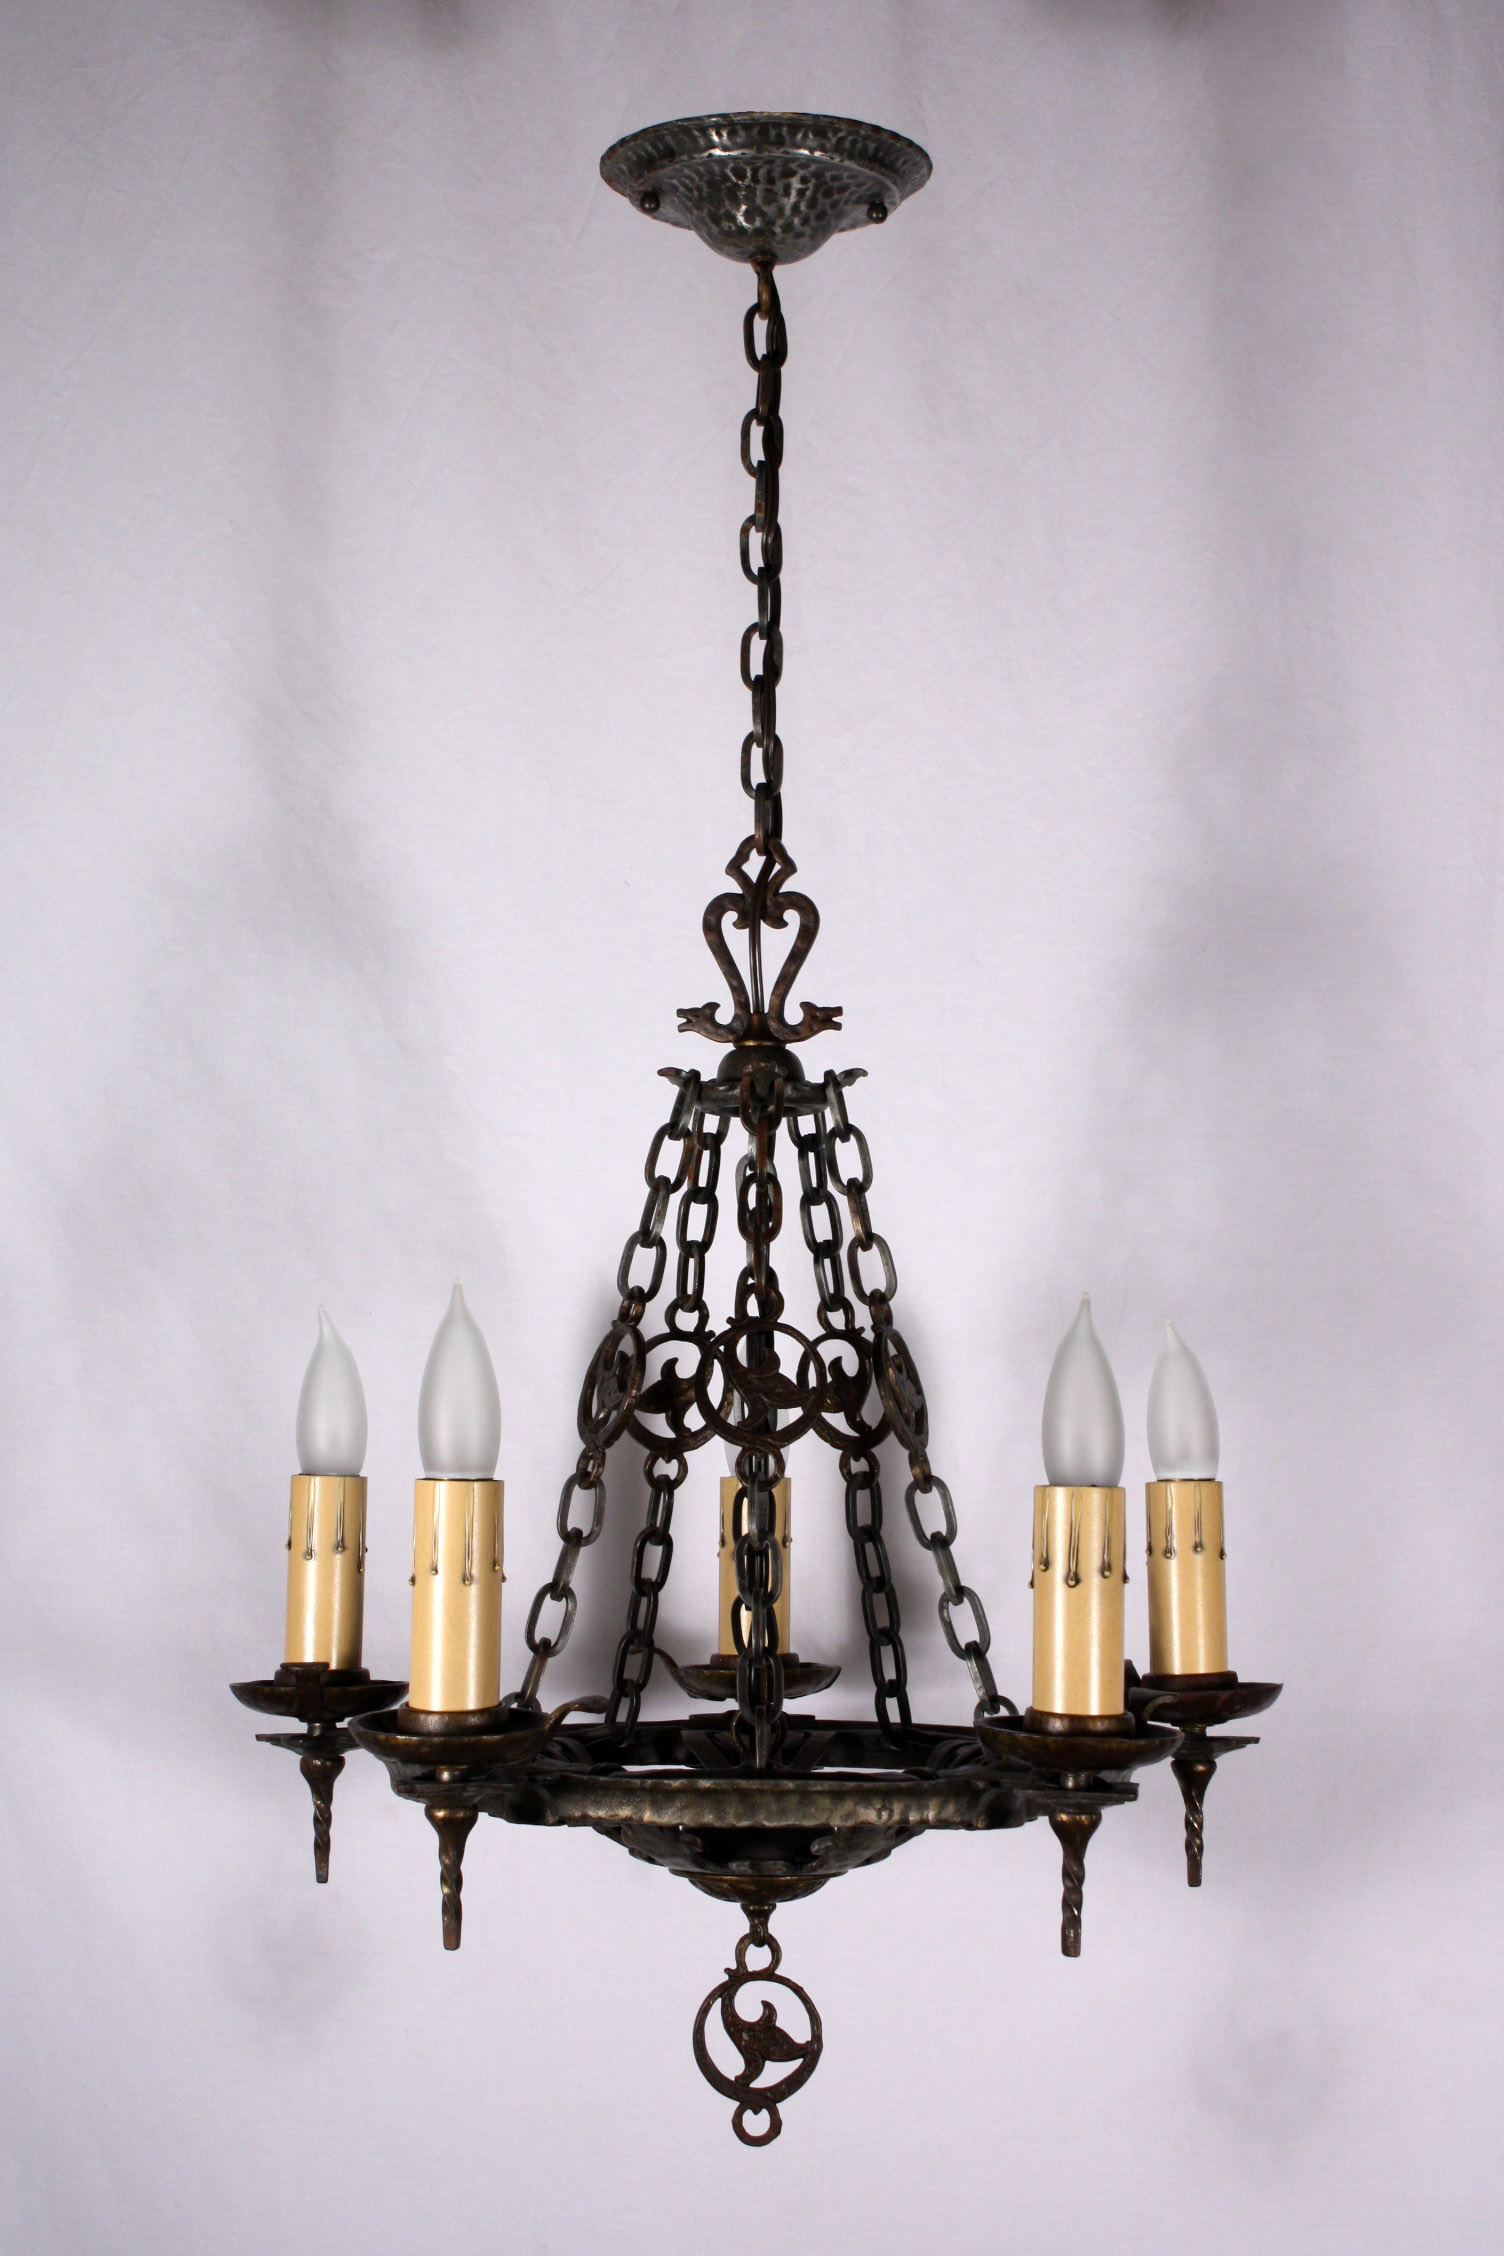 SOLD Striking Antique Five-Light Cast Iron Tudor Chandelier, Signed Virden-18789